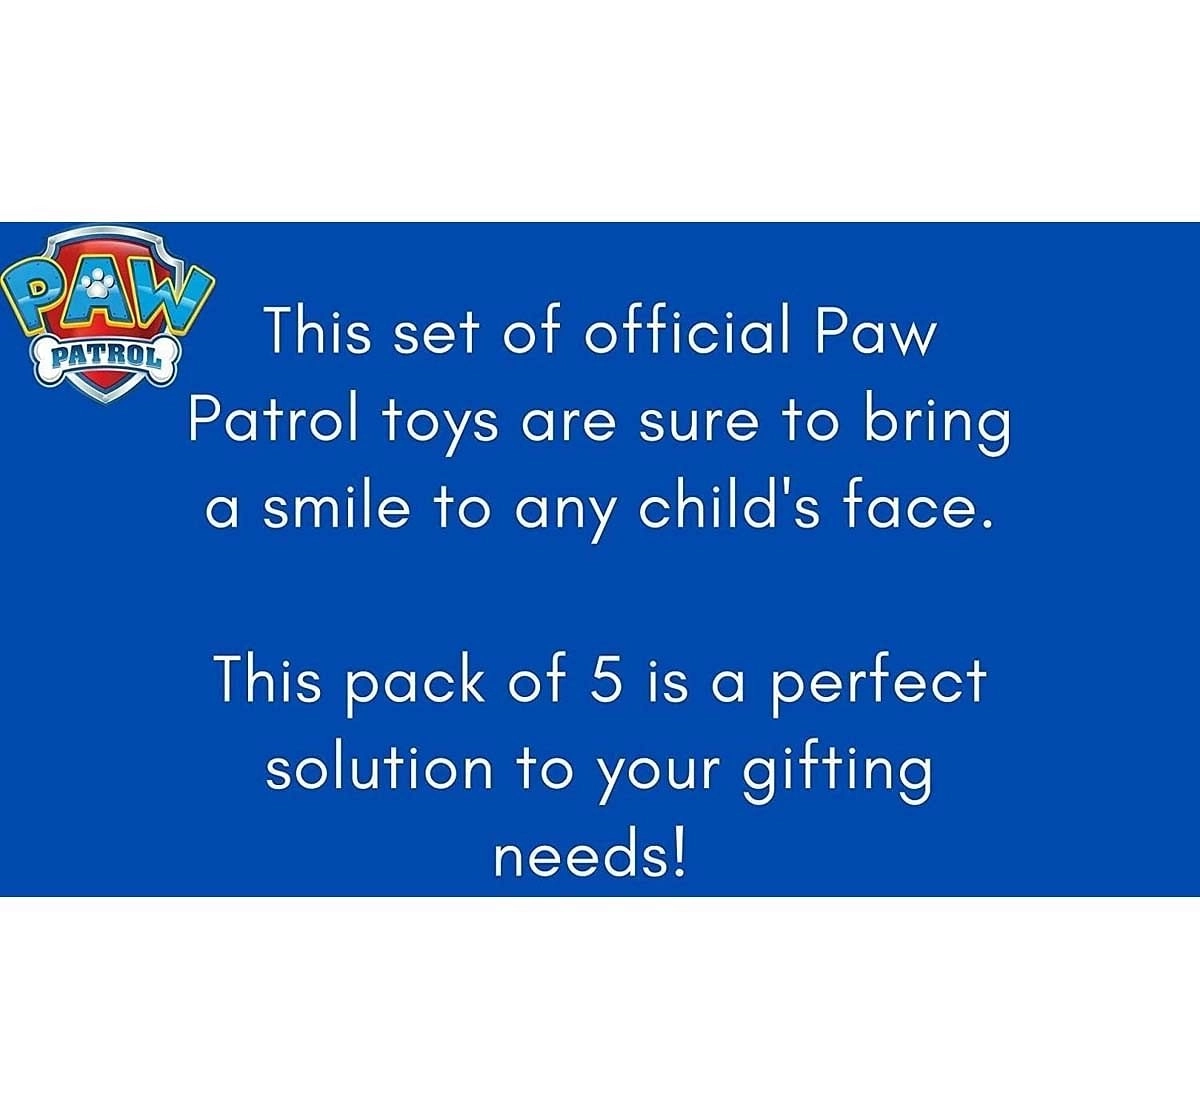 Paw Patrol Binoculars Impulse Toys for Kids Age 3Y+